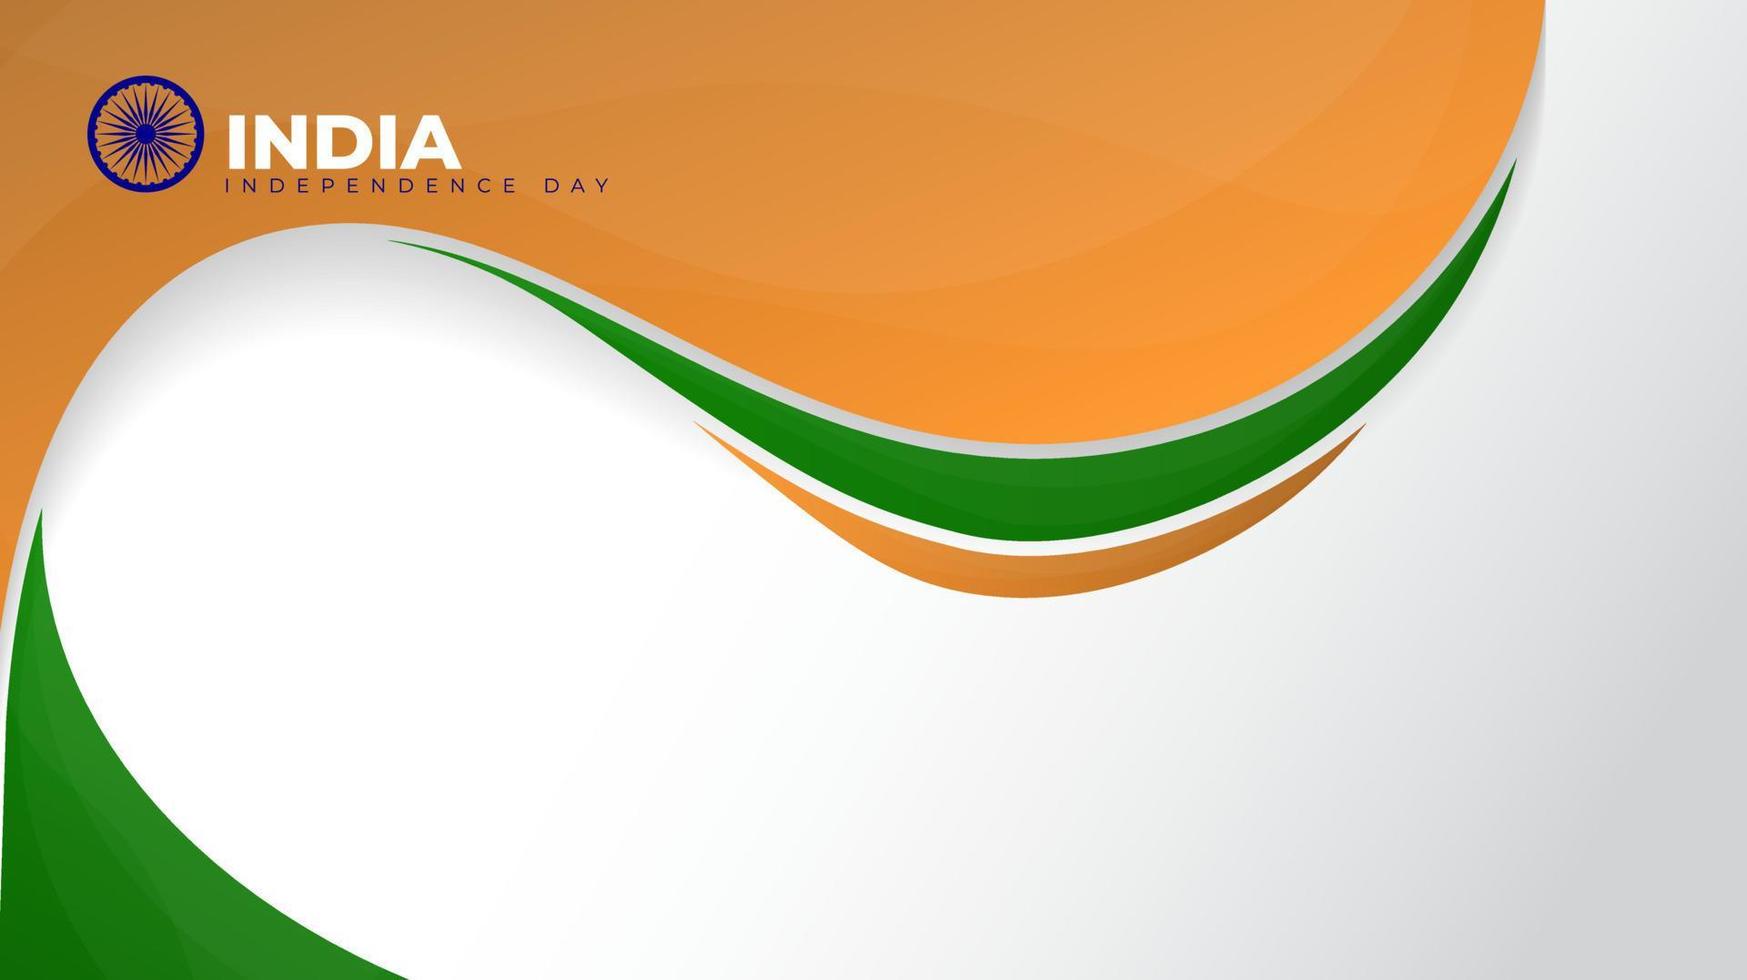 acenando o fundo laranja e verde para o design do dia da independência da índia vetor